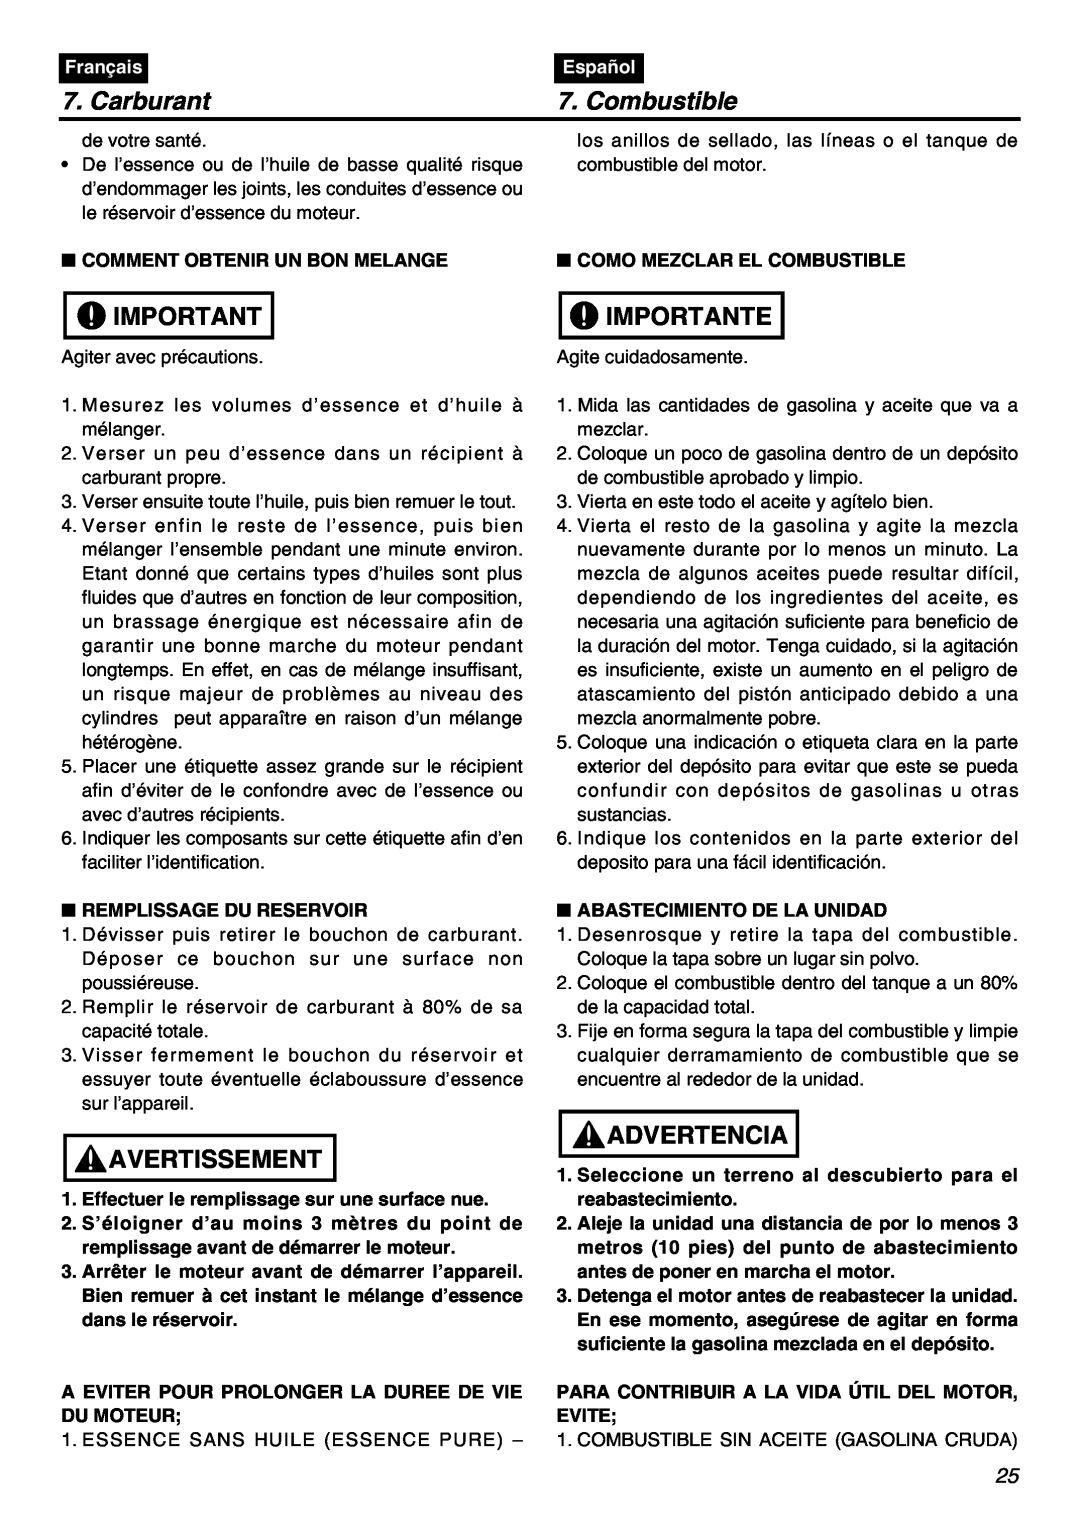 RedMax SRTZ2401F manual Carburant, Combustible, Importante, Avertissement, Advertencia, Français, Español 